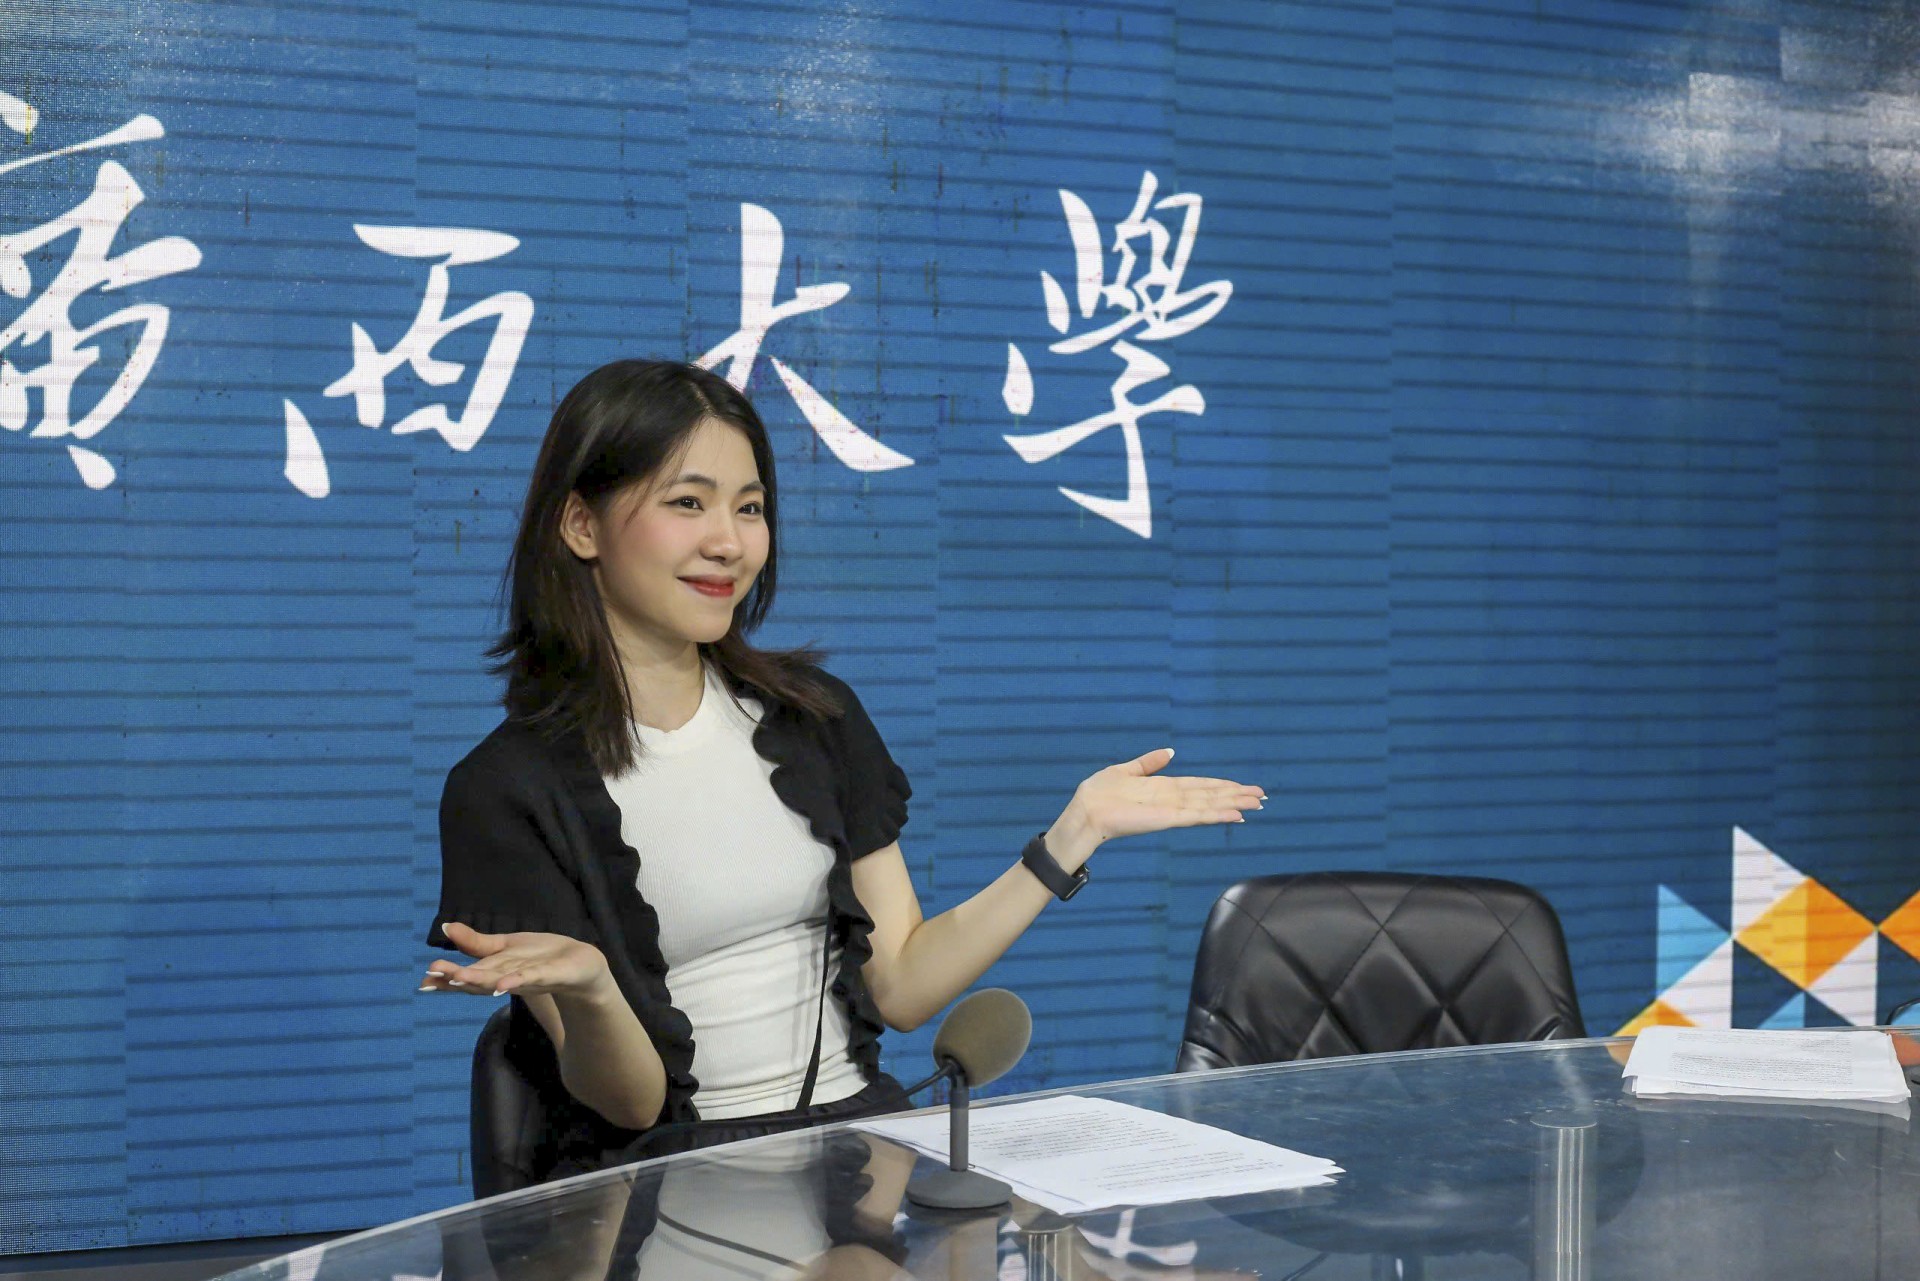 Kỳ thực tế tại Đại học Quảng Tây, Trung Quốc của K67 Báo chí CLC